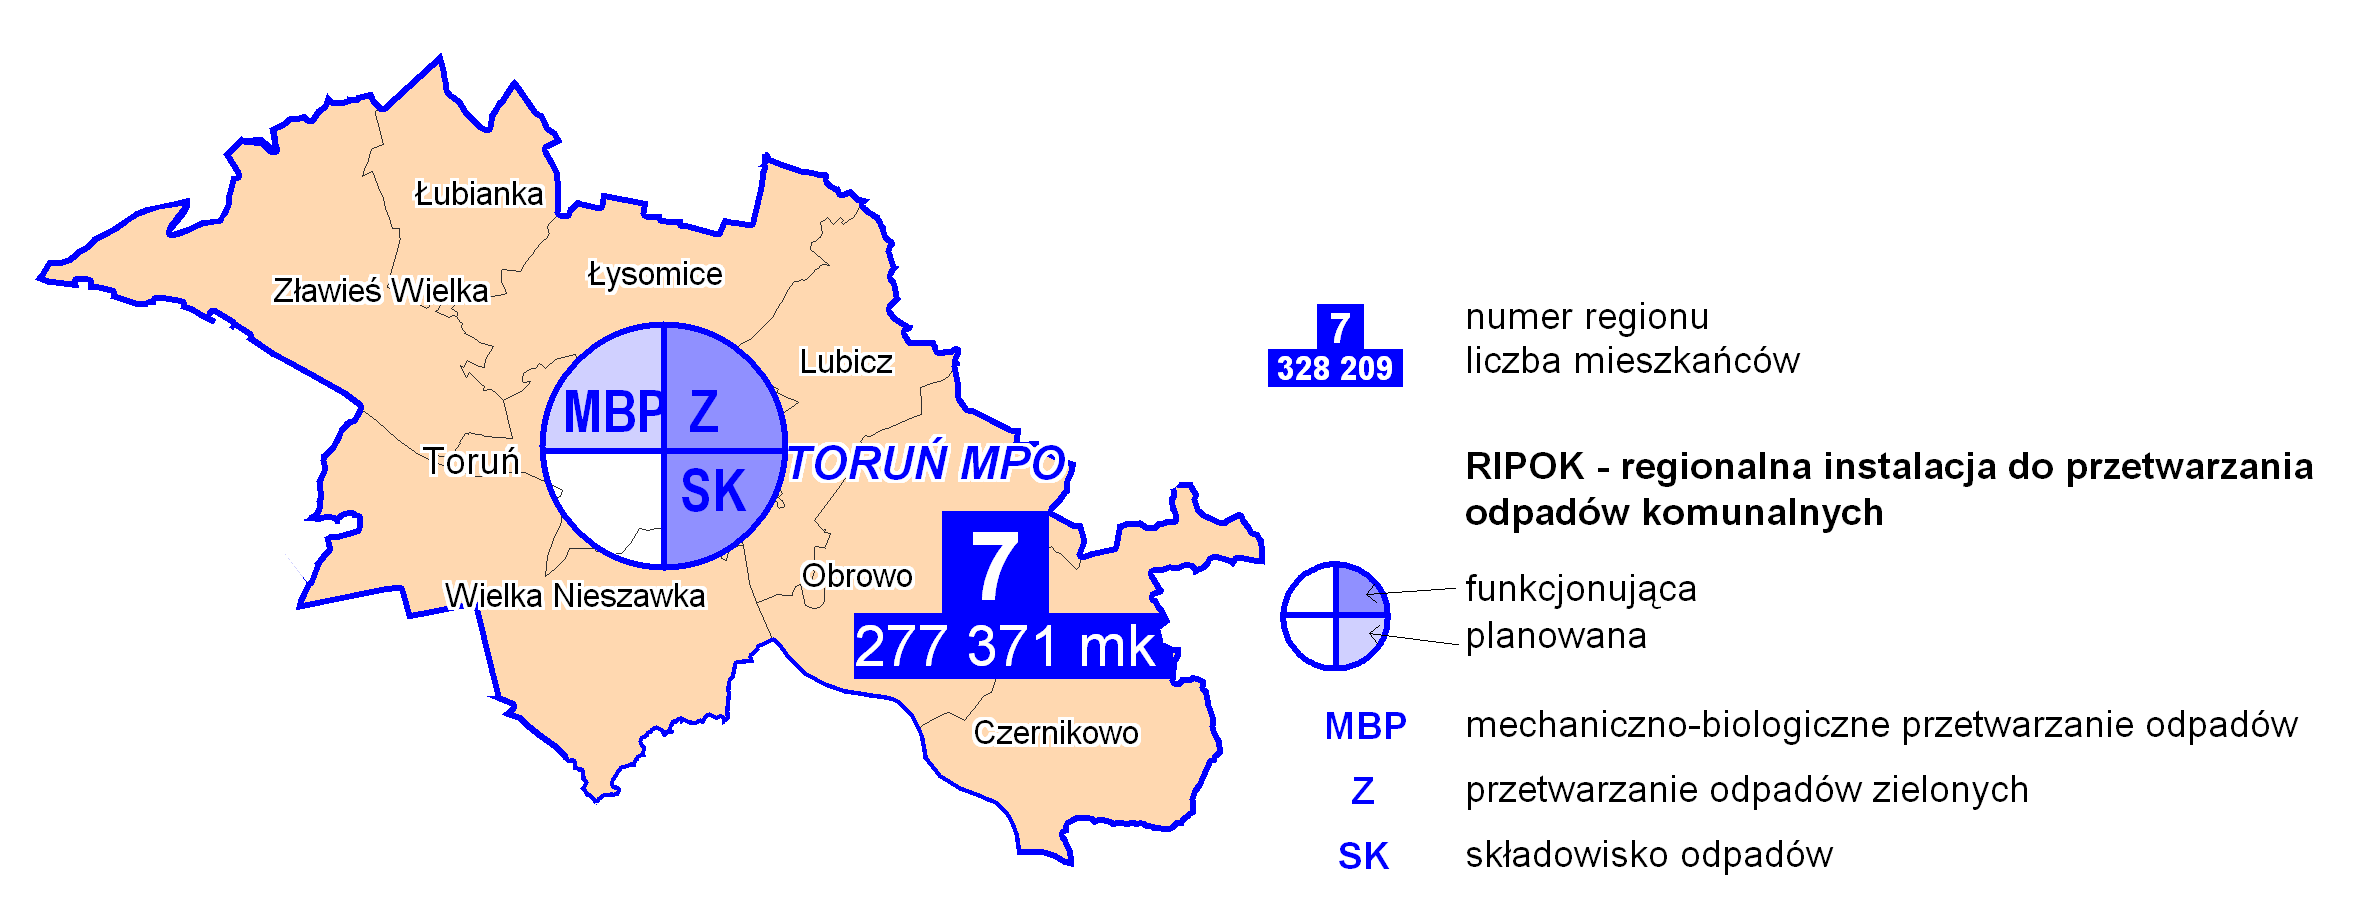 Region 7